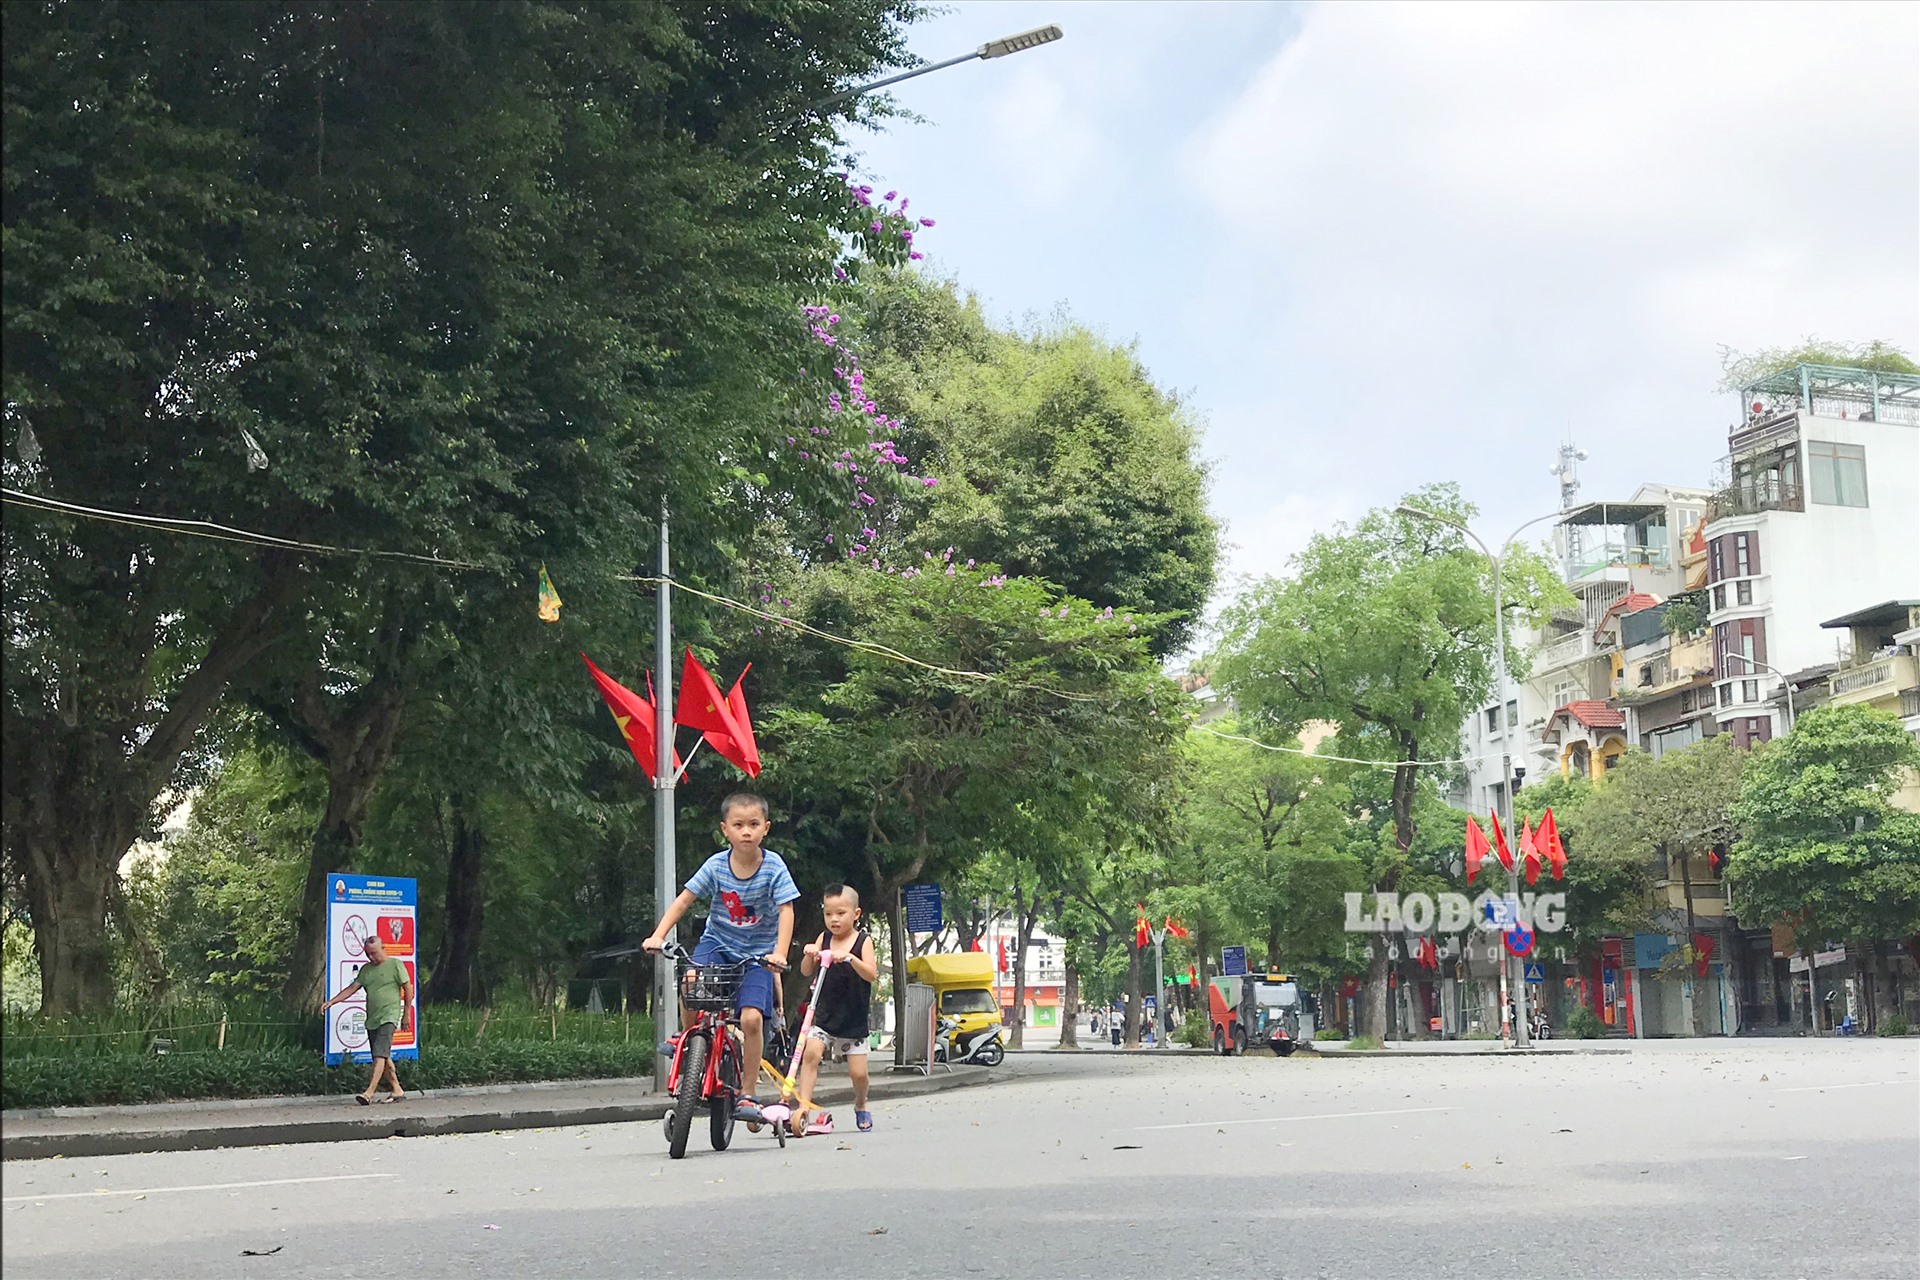 Đoạn phố Hồ Hoàn Kiếm giao cắt với Đinh Tiên Hoàng trước đây thường rất đông các bạn trẻ tụ tập thành nhóm để nhảy múa, tập luyện hoặc chơi trò chơi, nhưng hôm nay chỉ có 2 bạn nhỏ đạp xe đi lại.